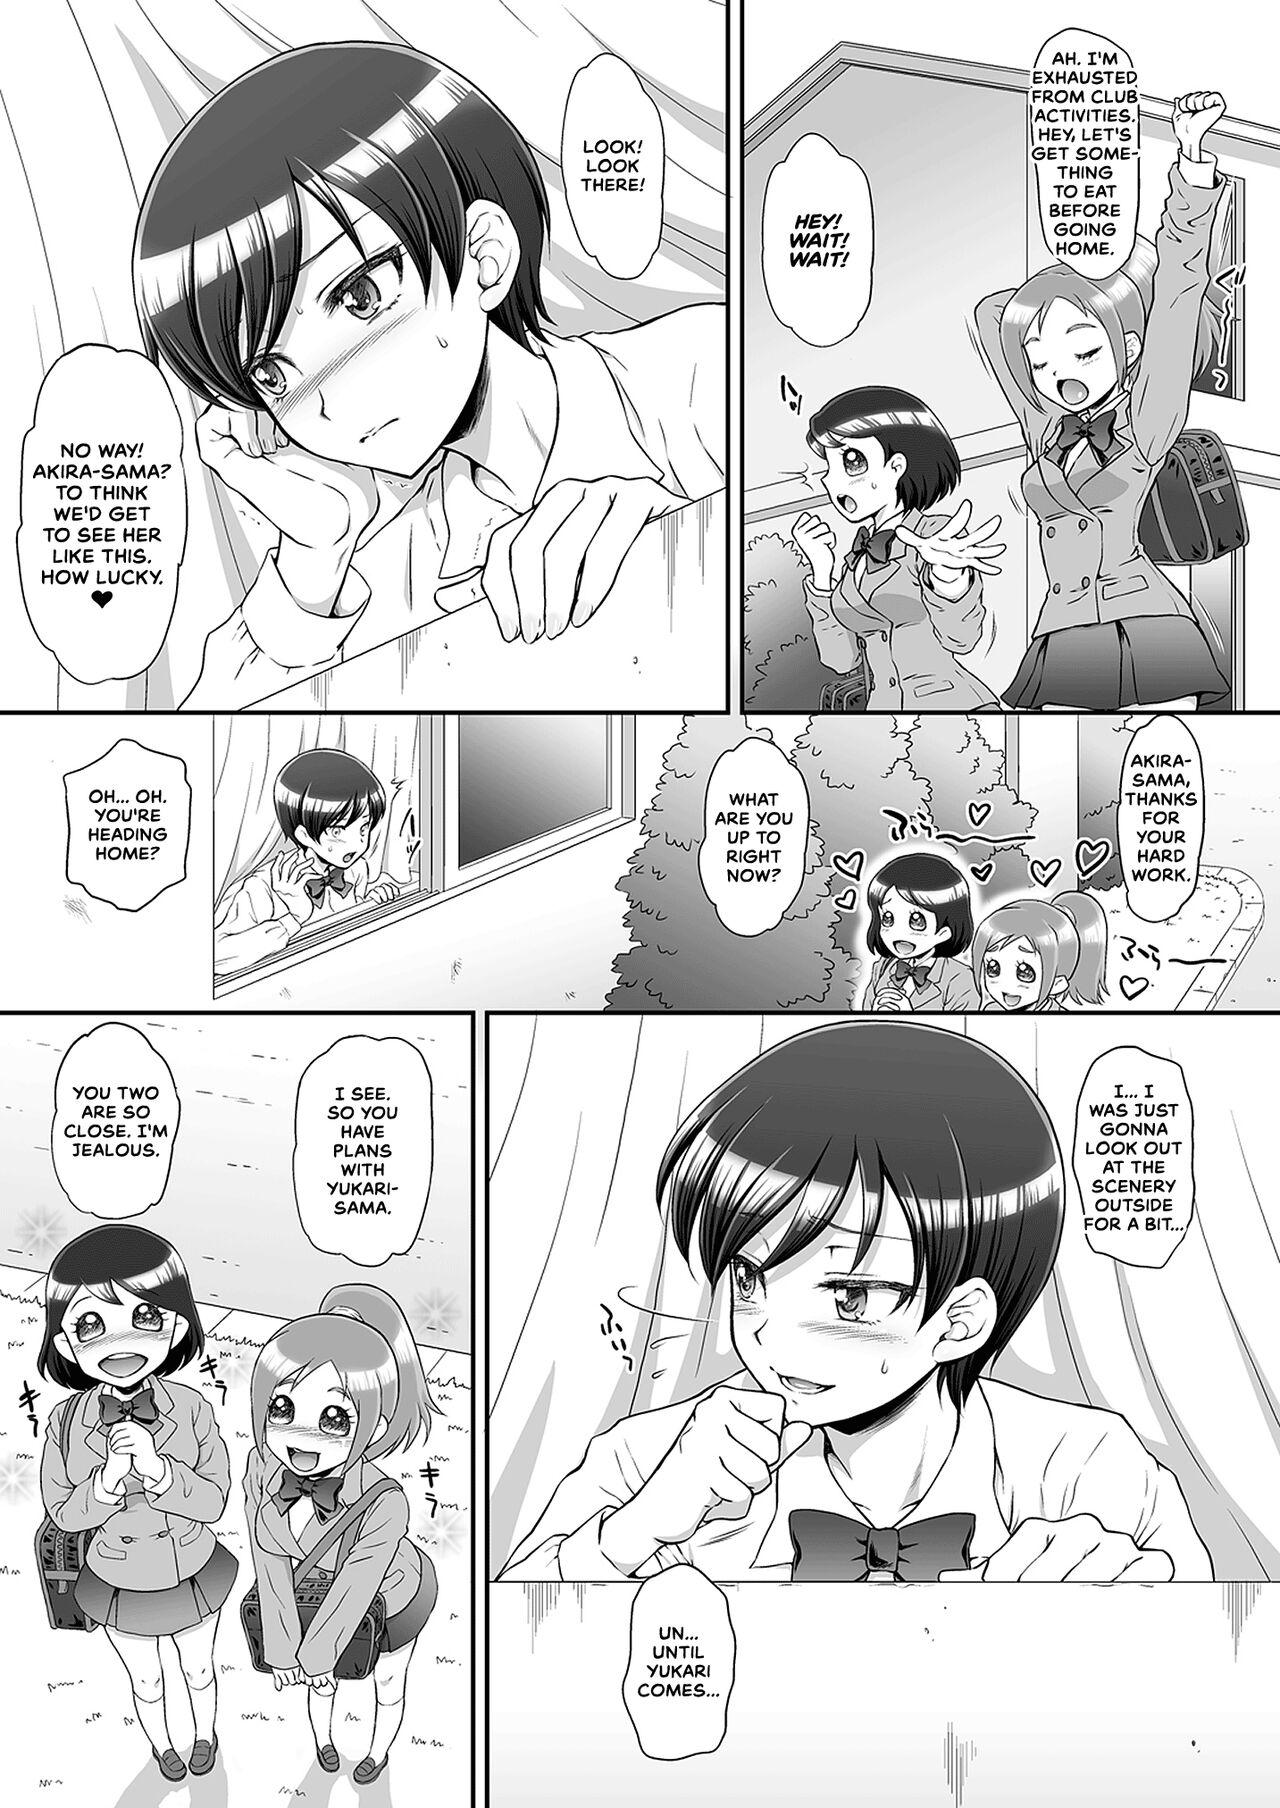 Cruising Omakebon Collection 2 - Pretty cure Kirakira precure a la mode Maho girls precure | mahou tsukai precure Urine - Page 3